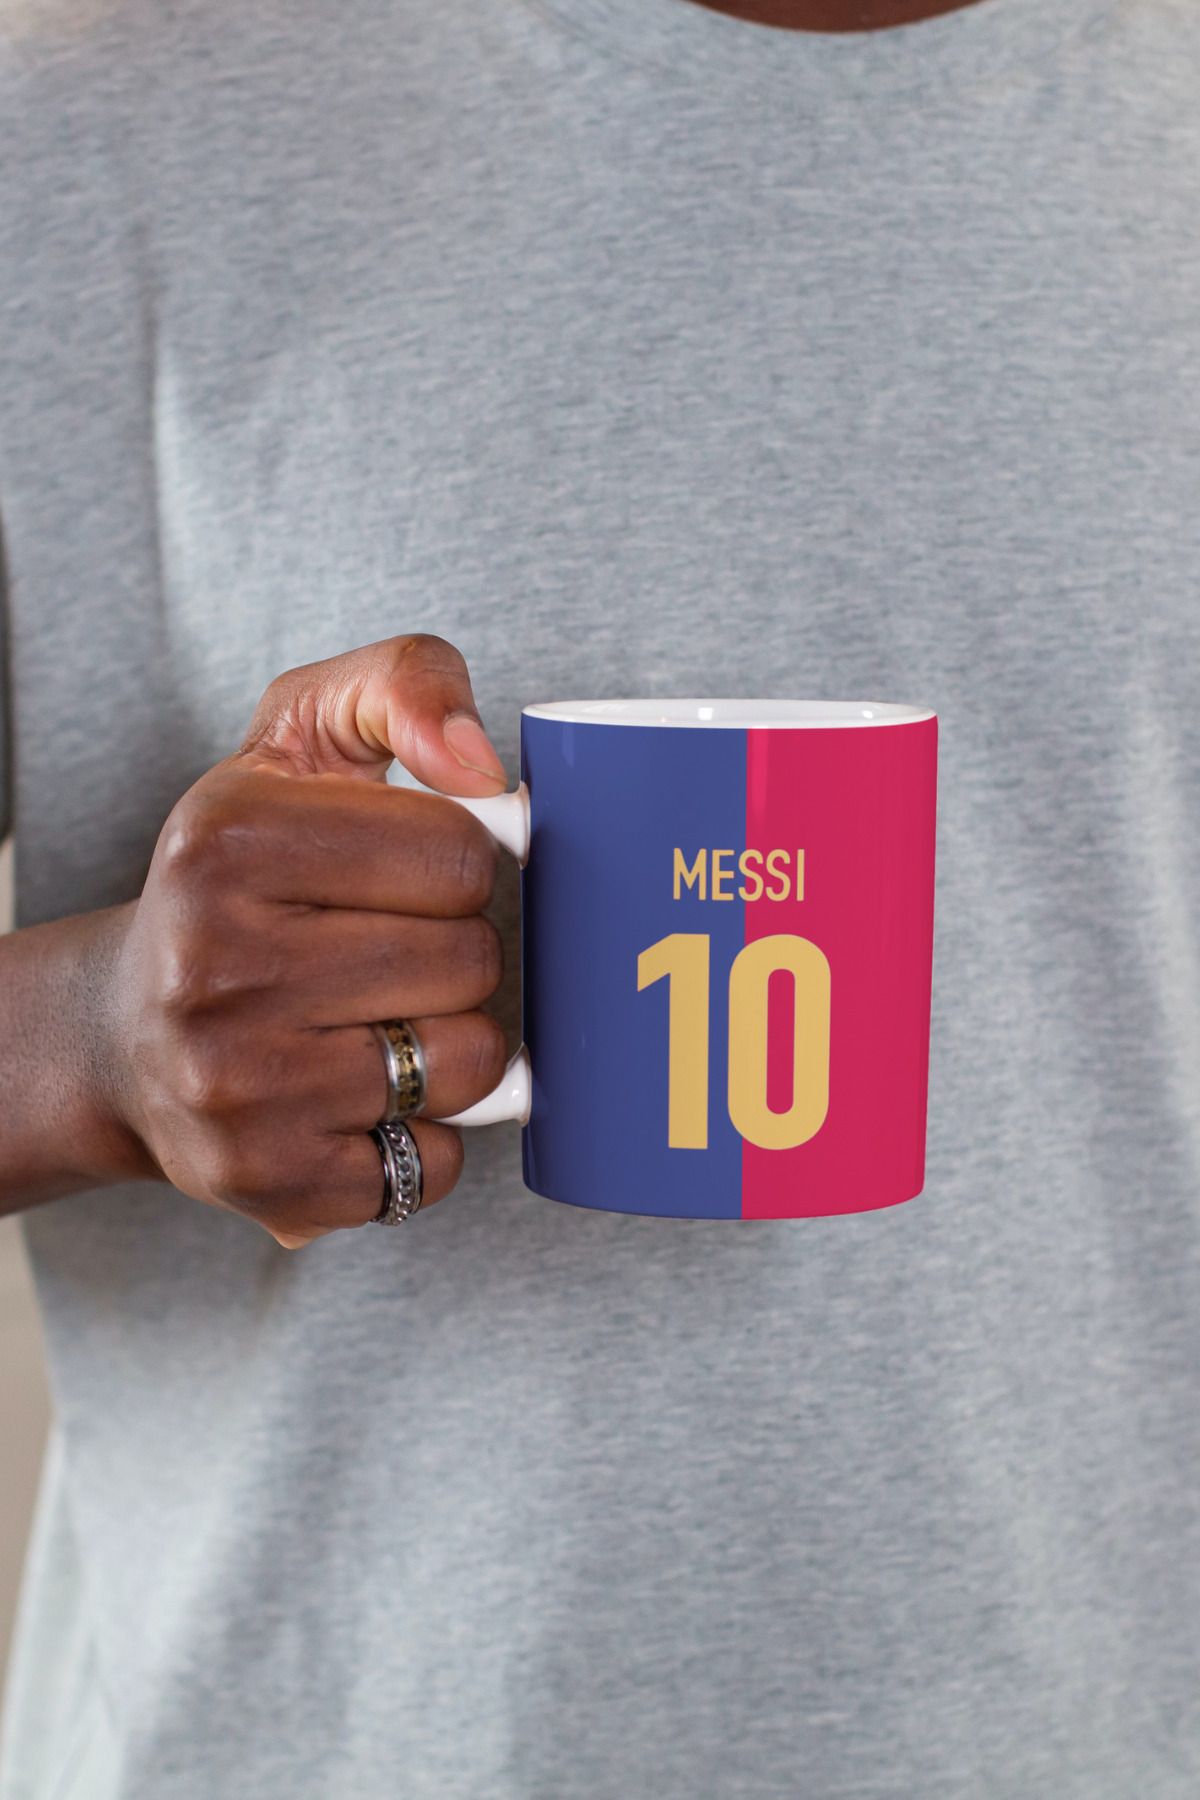 İBİSAF özel futbo Barcelona tasarım hediye kutulu Porselen Baskılı Kupa Bardak